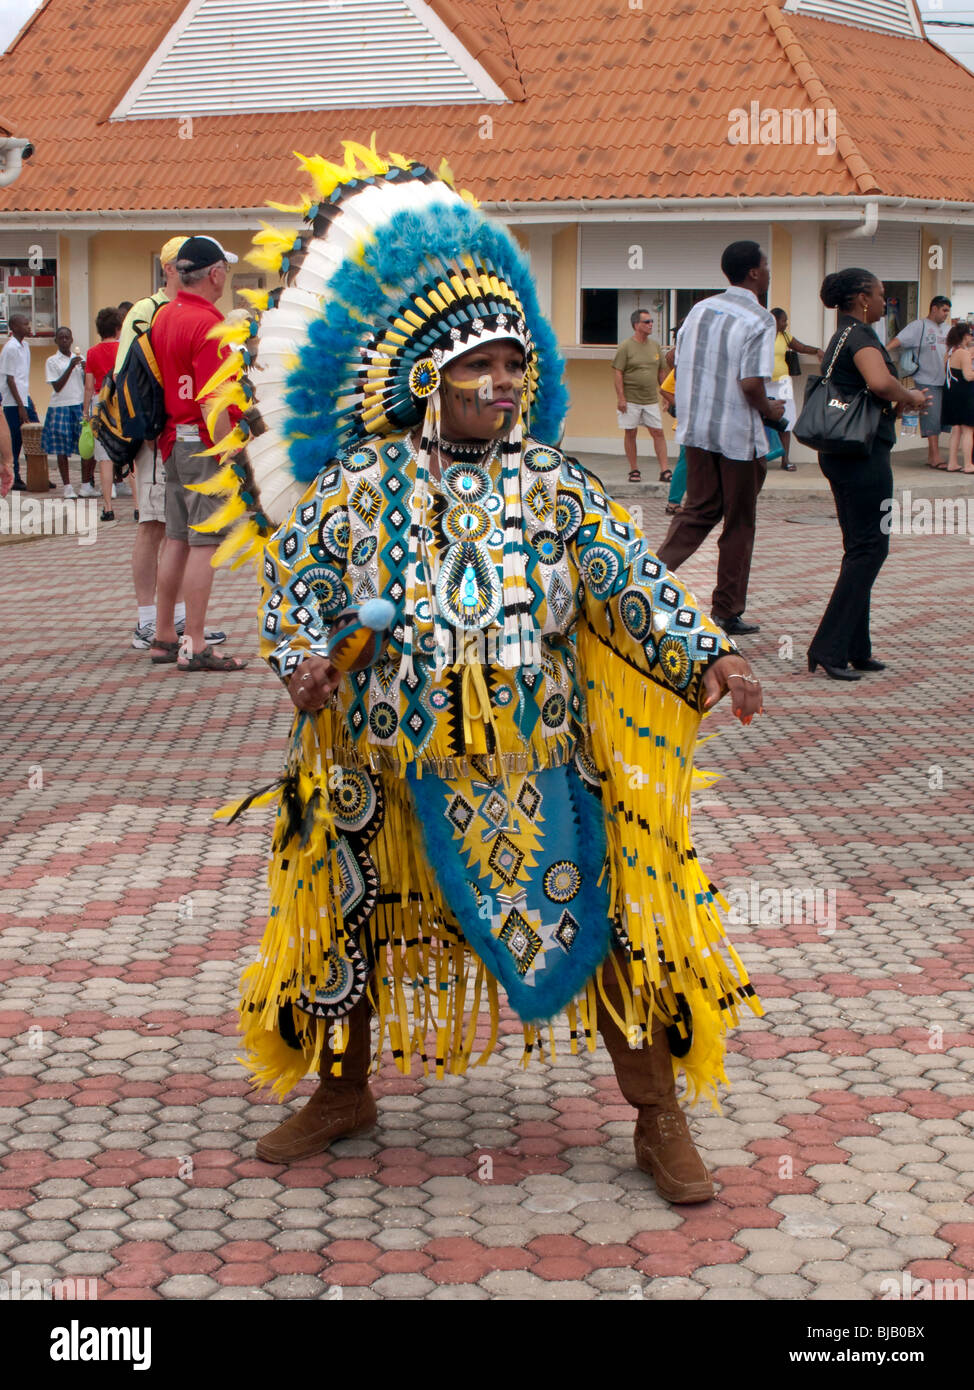 Un Carnaval Fantasía huelgas indio en una pose muy colorido traje amarillo  y azul con un gran tocado de plumas Fotografía de stock - Alamy